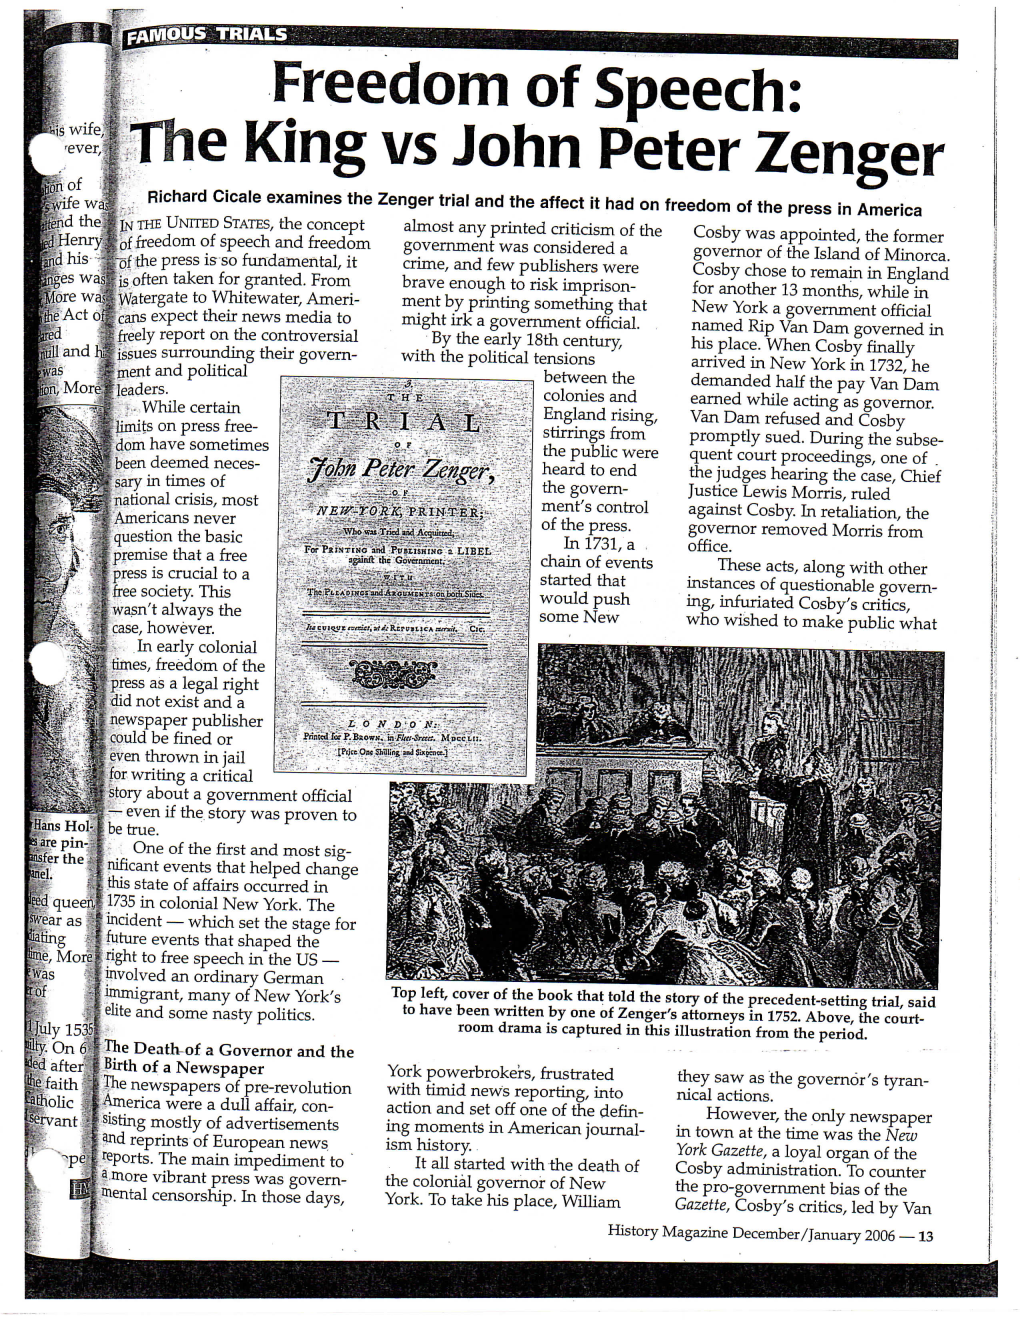 Freedom of Speech: the King Vs John Peter Zenger